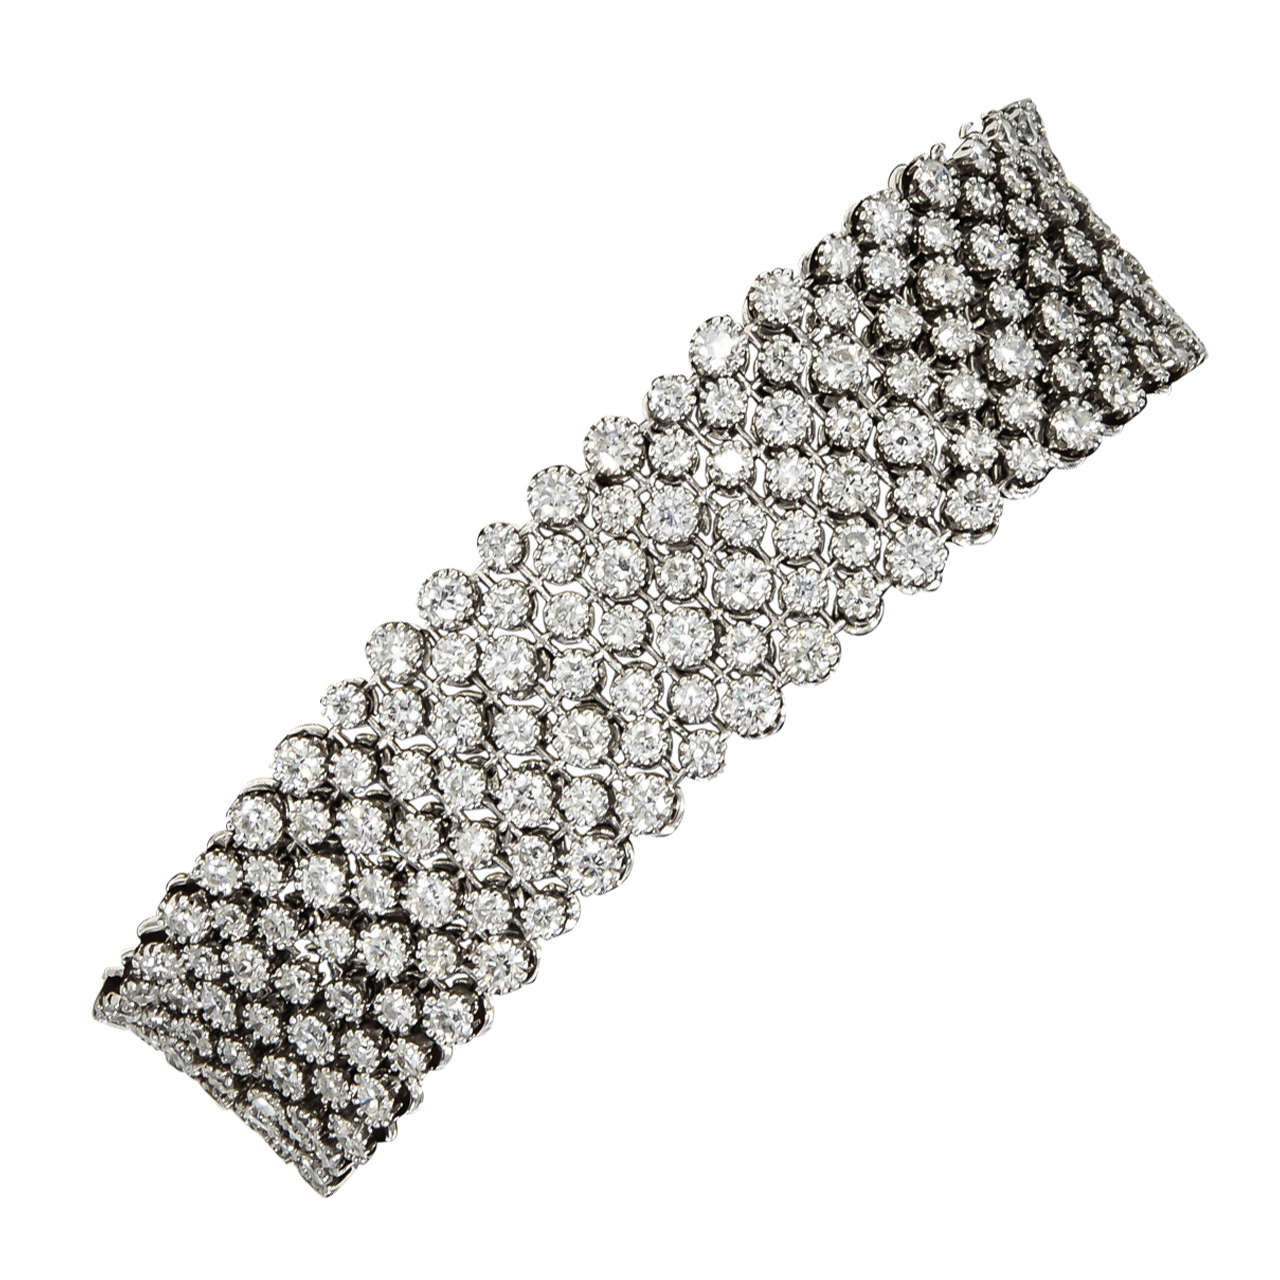 Share more than 67 diamond mesh bracelet best - 3tdesign.edu.vn